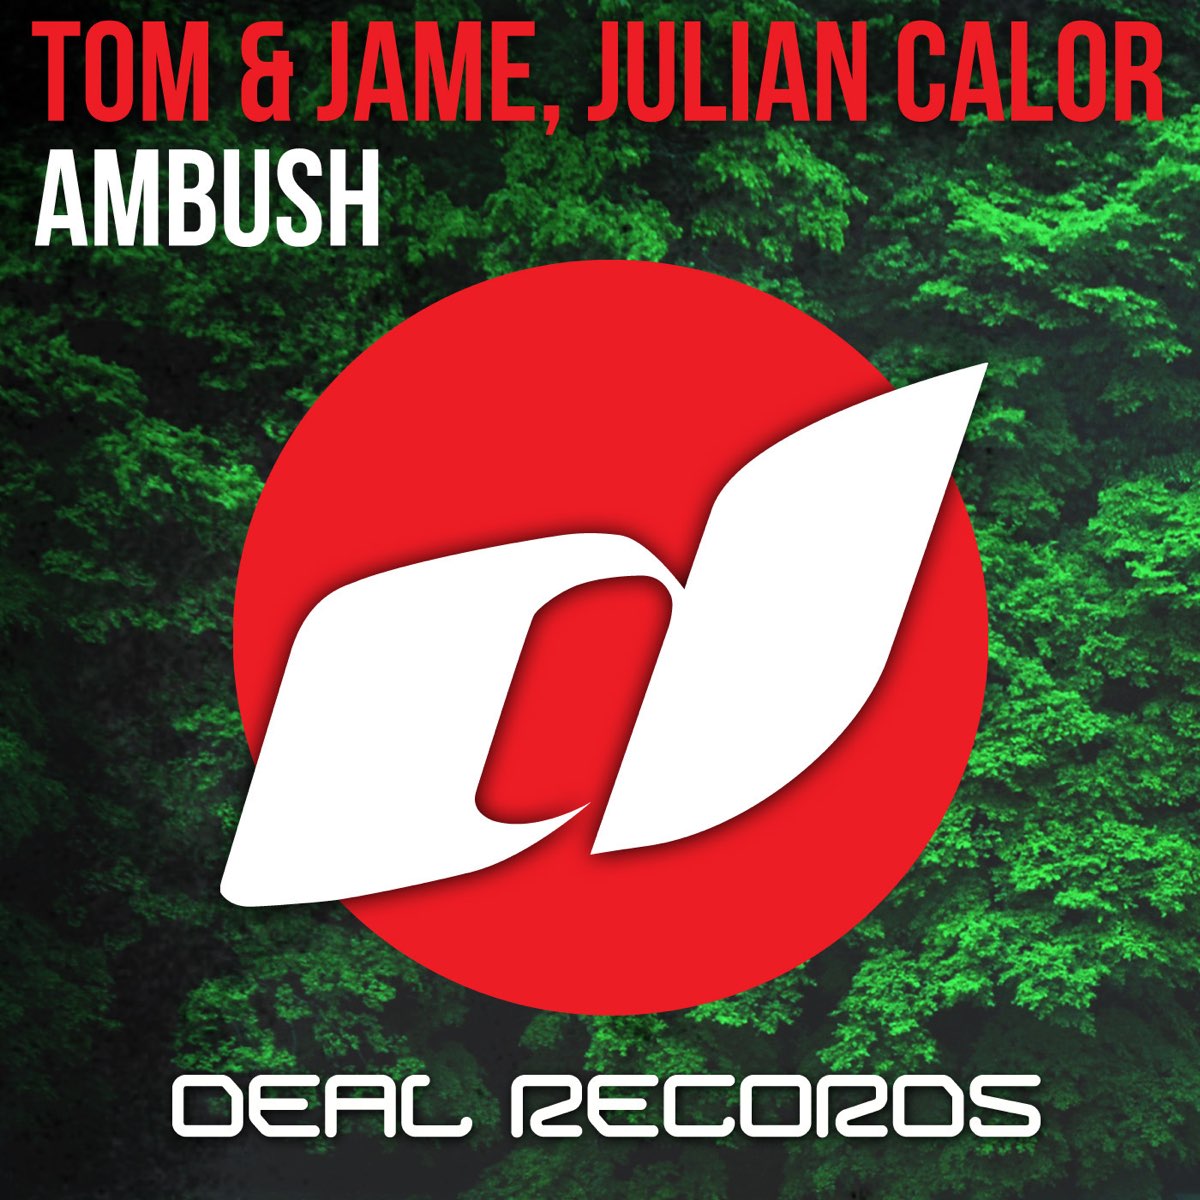 Tom Jame. Julian calor - Typhoon (Original Mix).